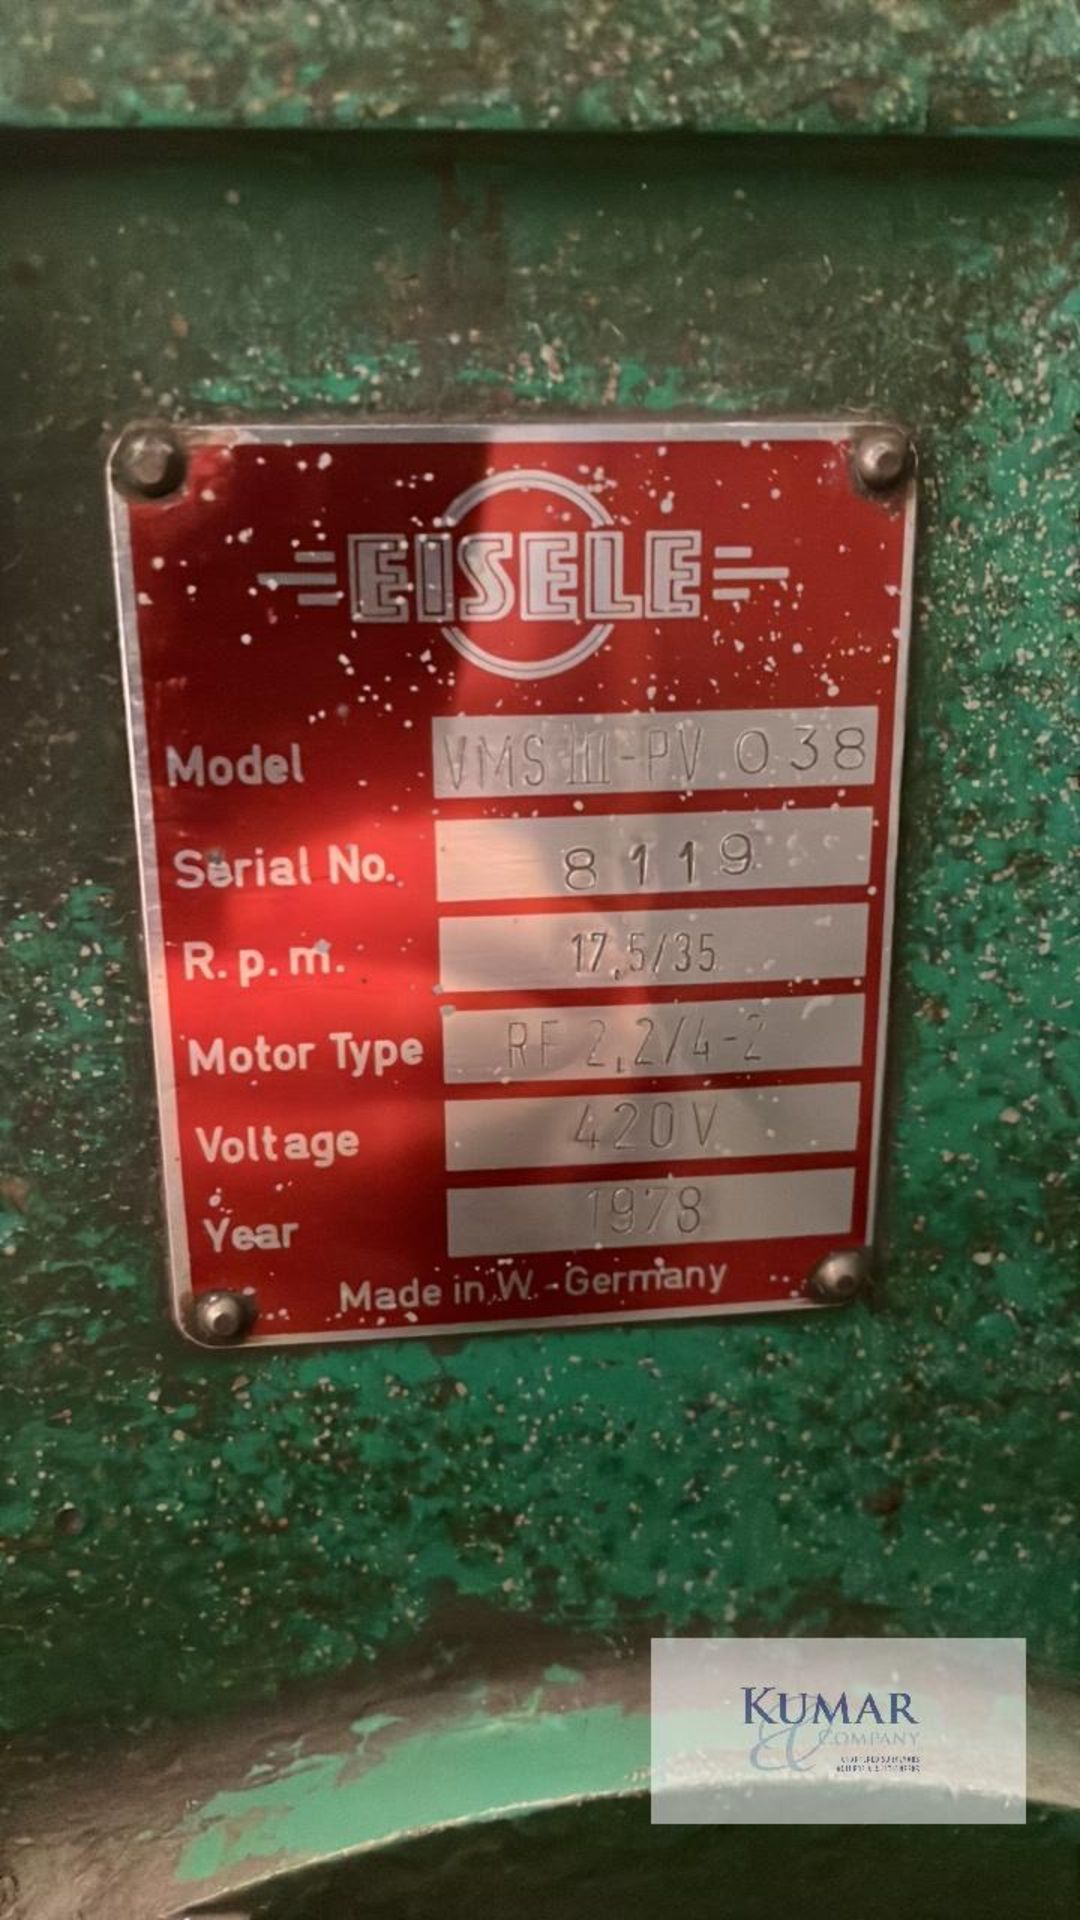 Eisele Model VMS III-PV 038, Chop saw/ grinderSerial No. 8119 - Image 5 of 5